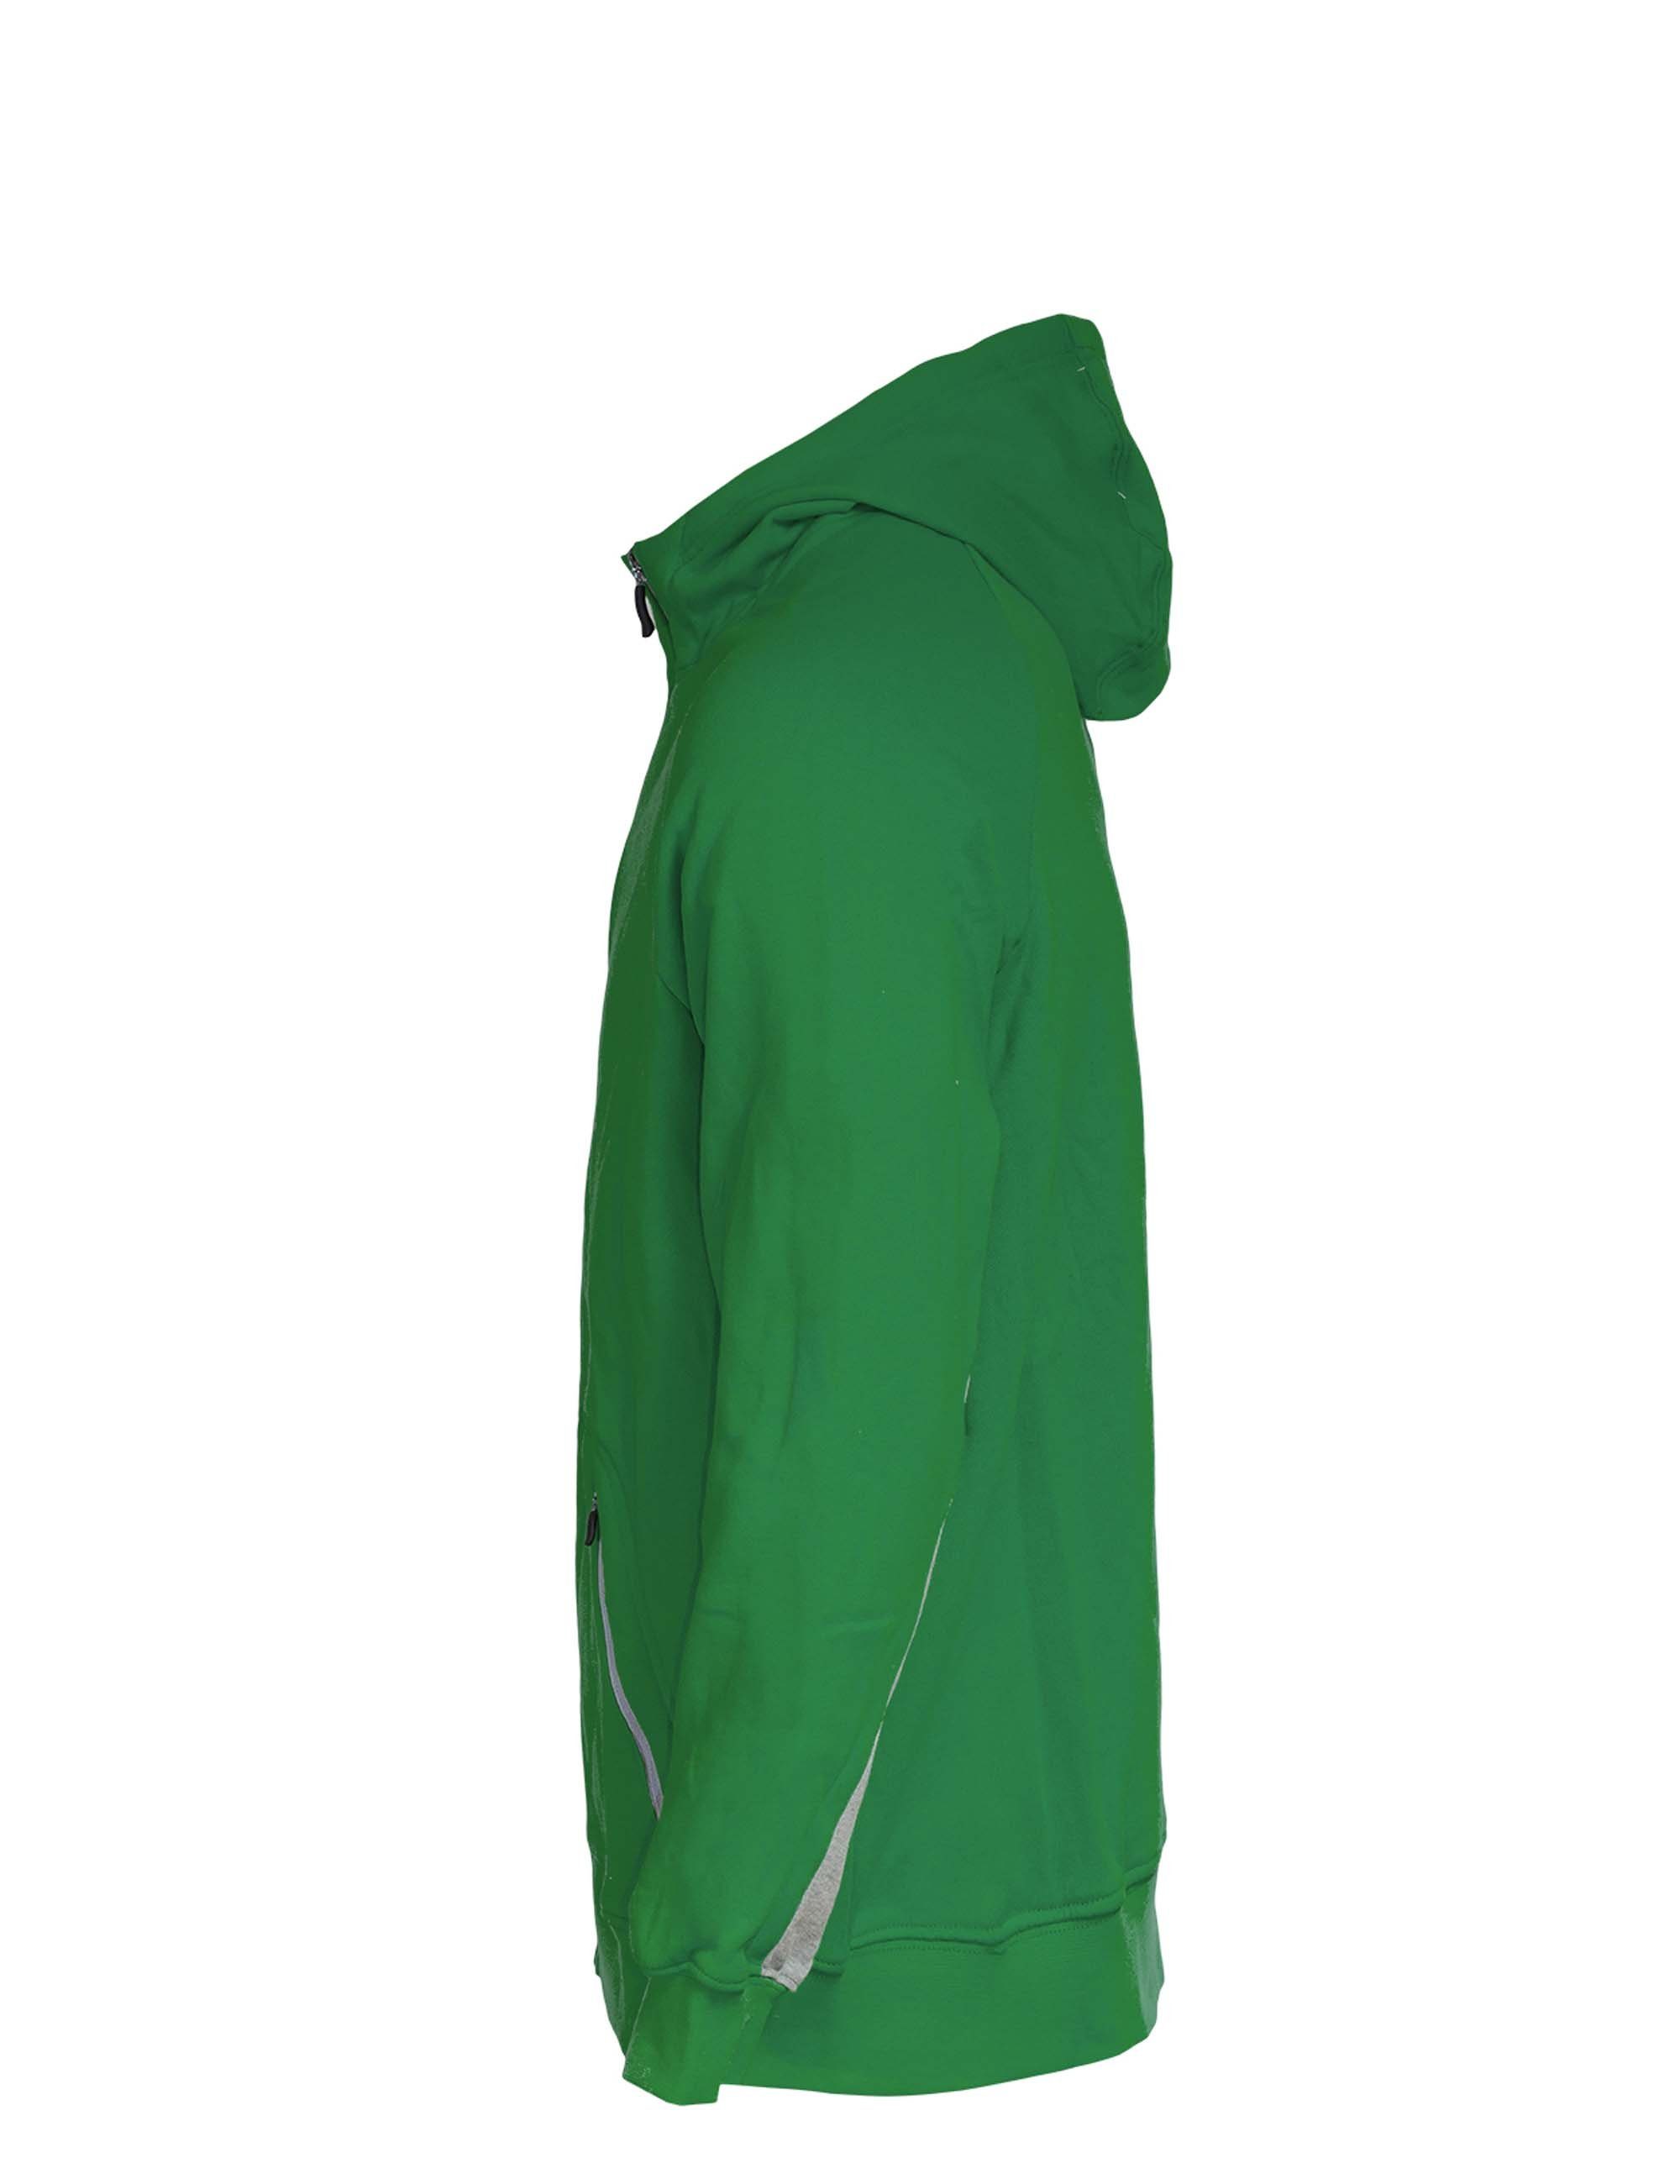 Sweatjacke Hoody sportlichen PEAK Zip im Look grün